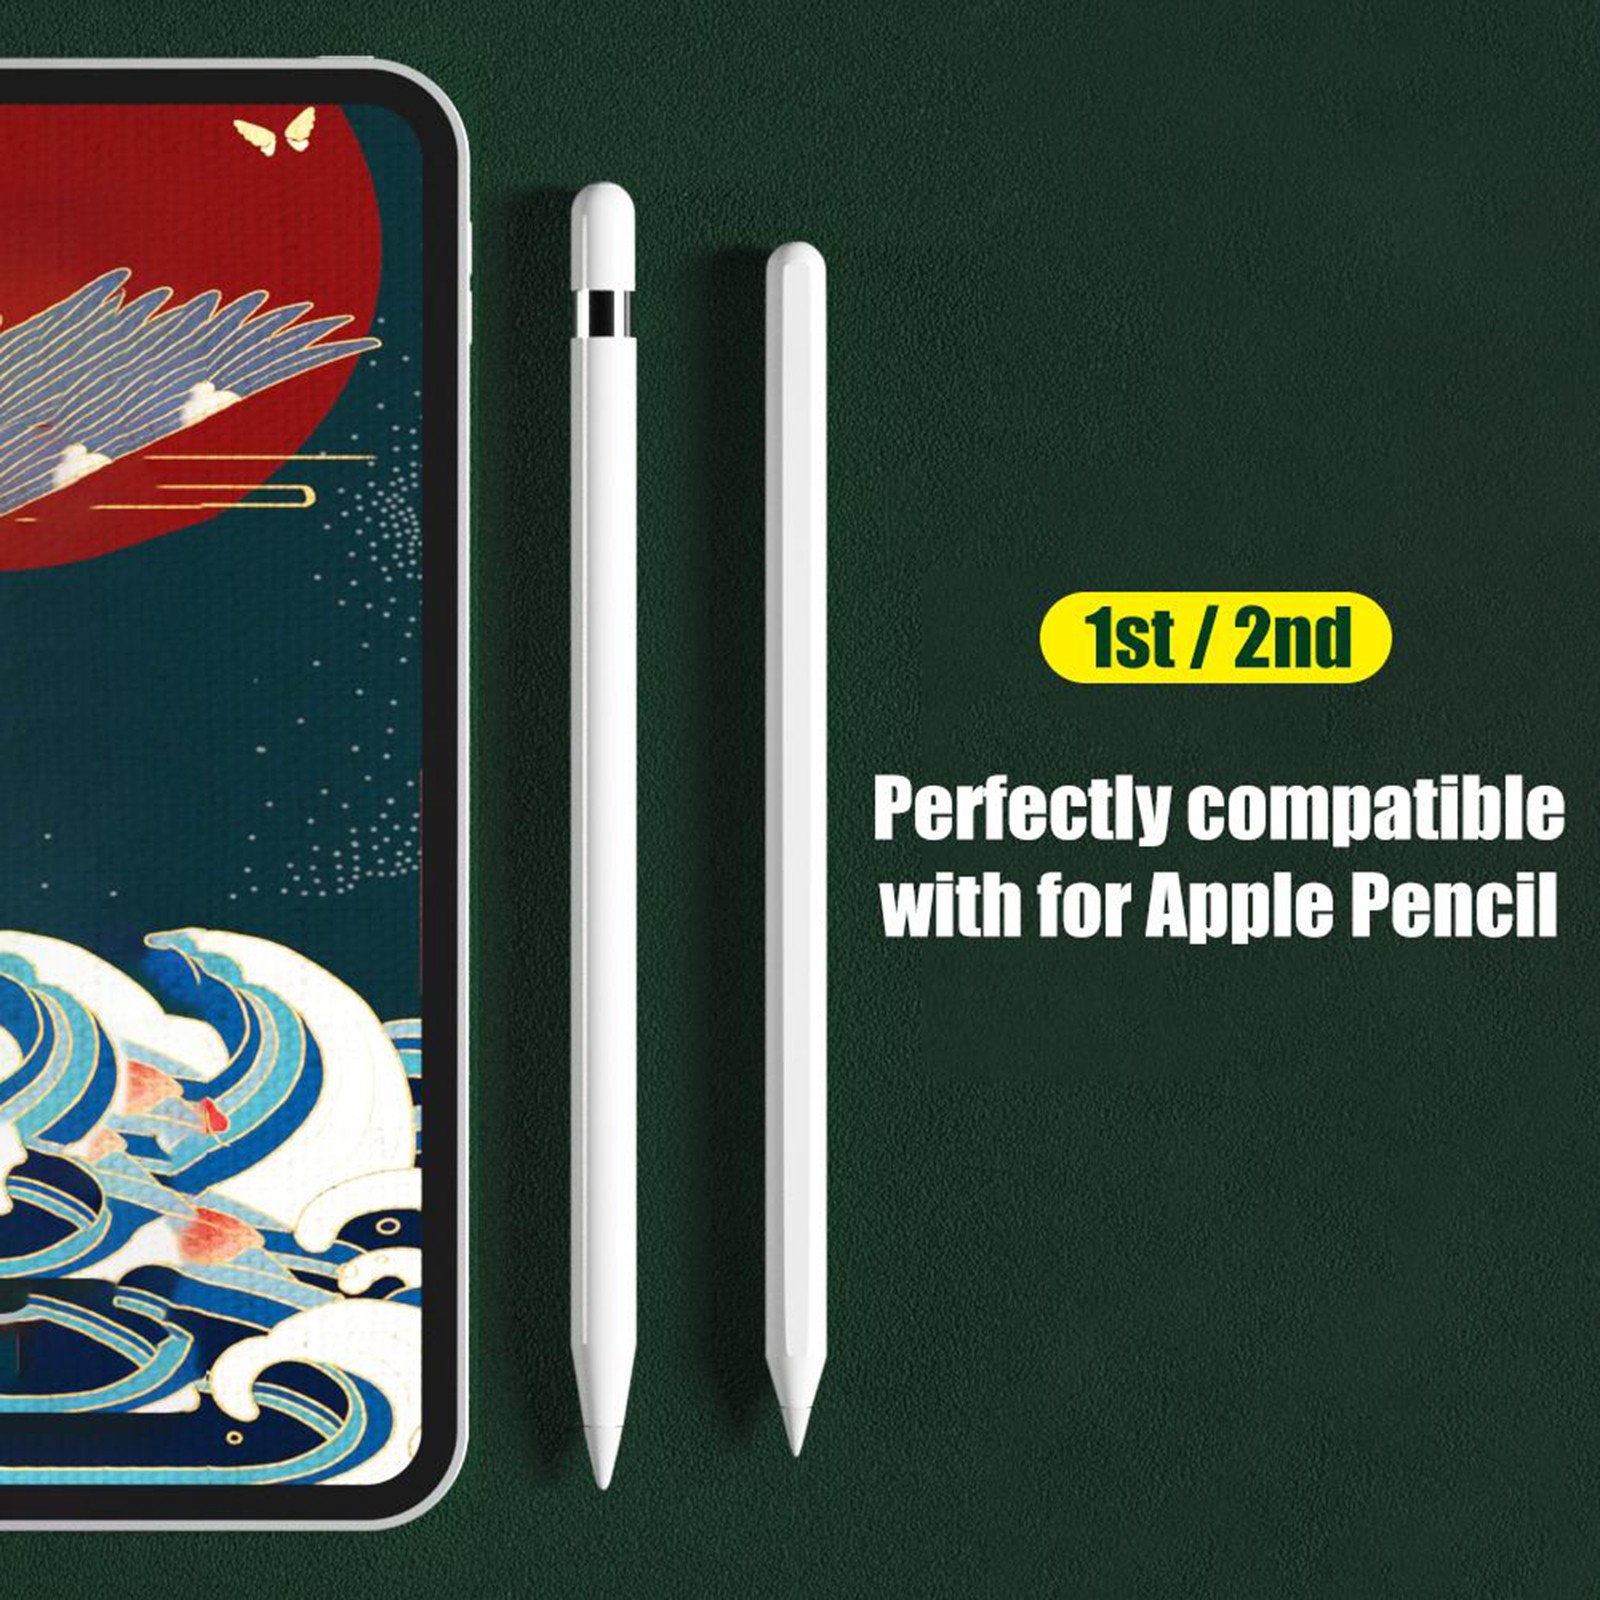 Đầu Thay Thế Cho Bút Cảm Ứng Apple Pencil 1st / 2nd Ipad Pro